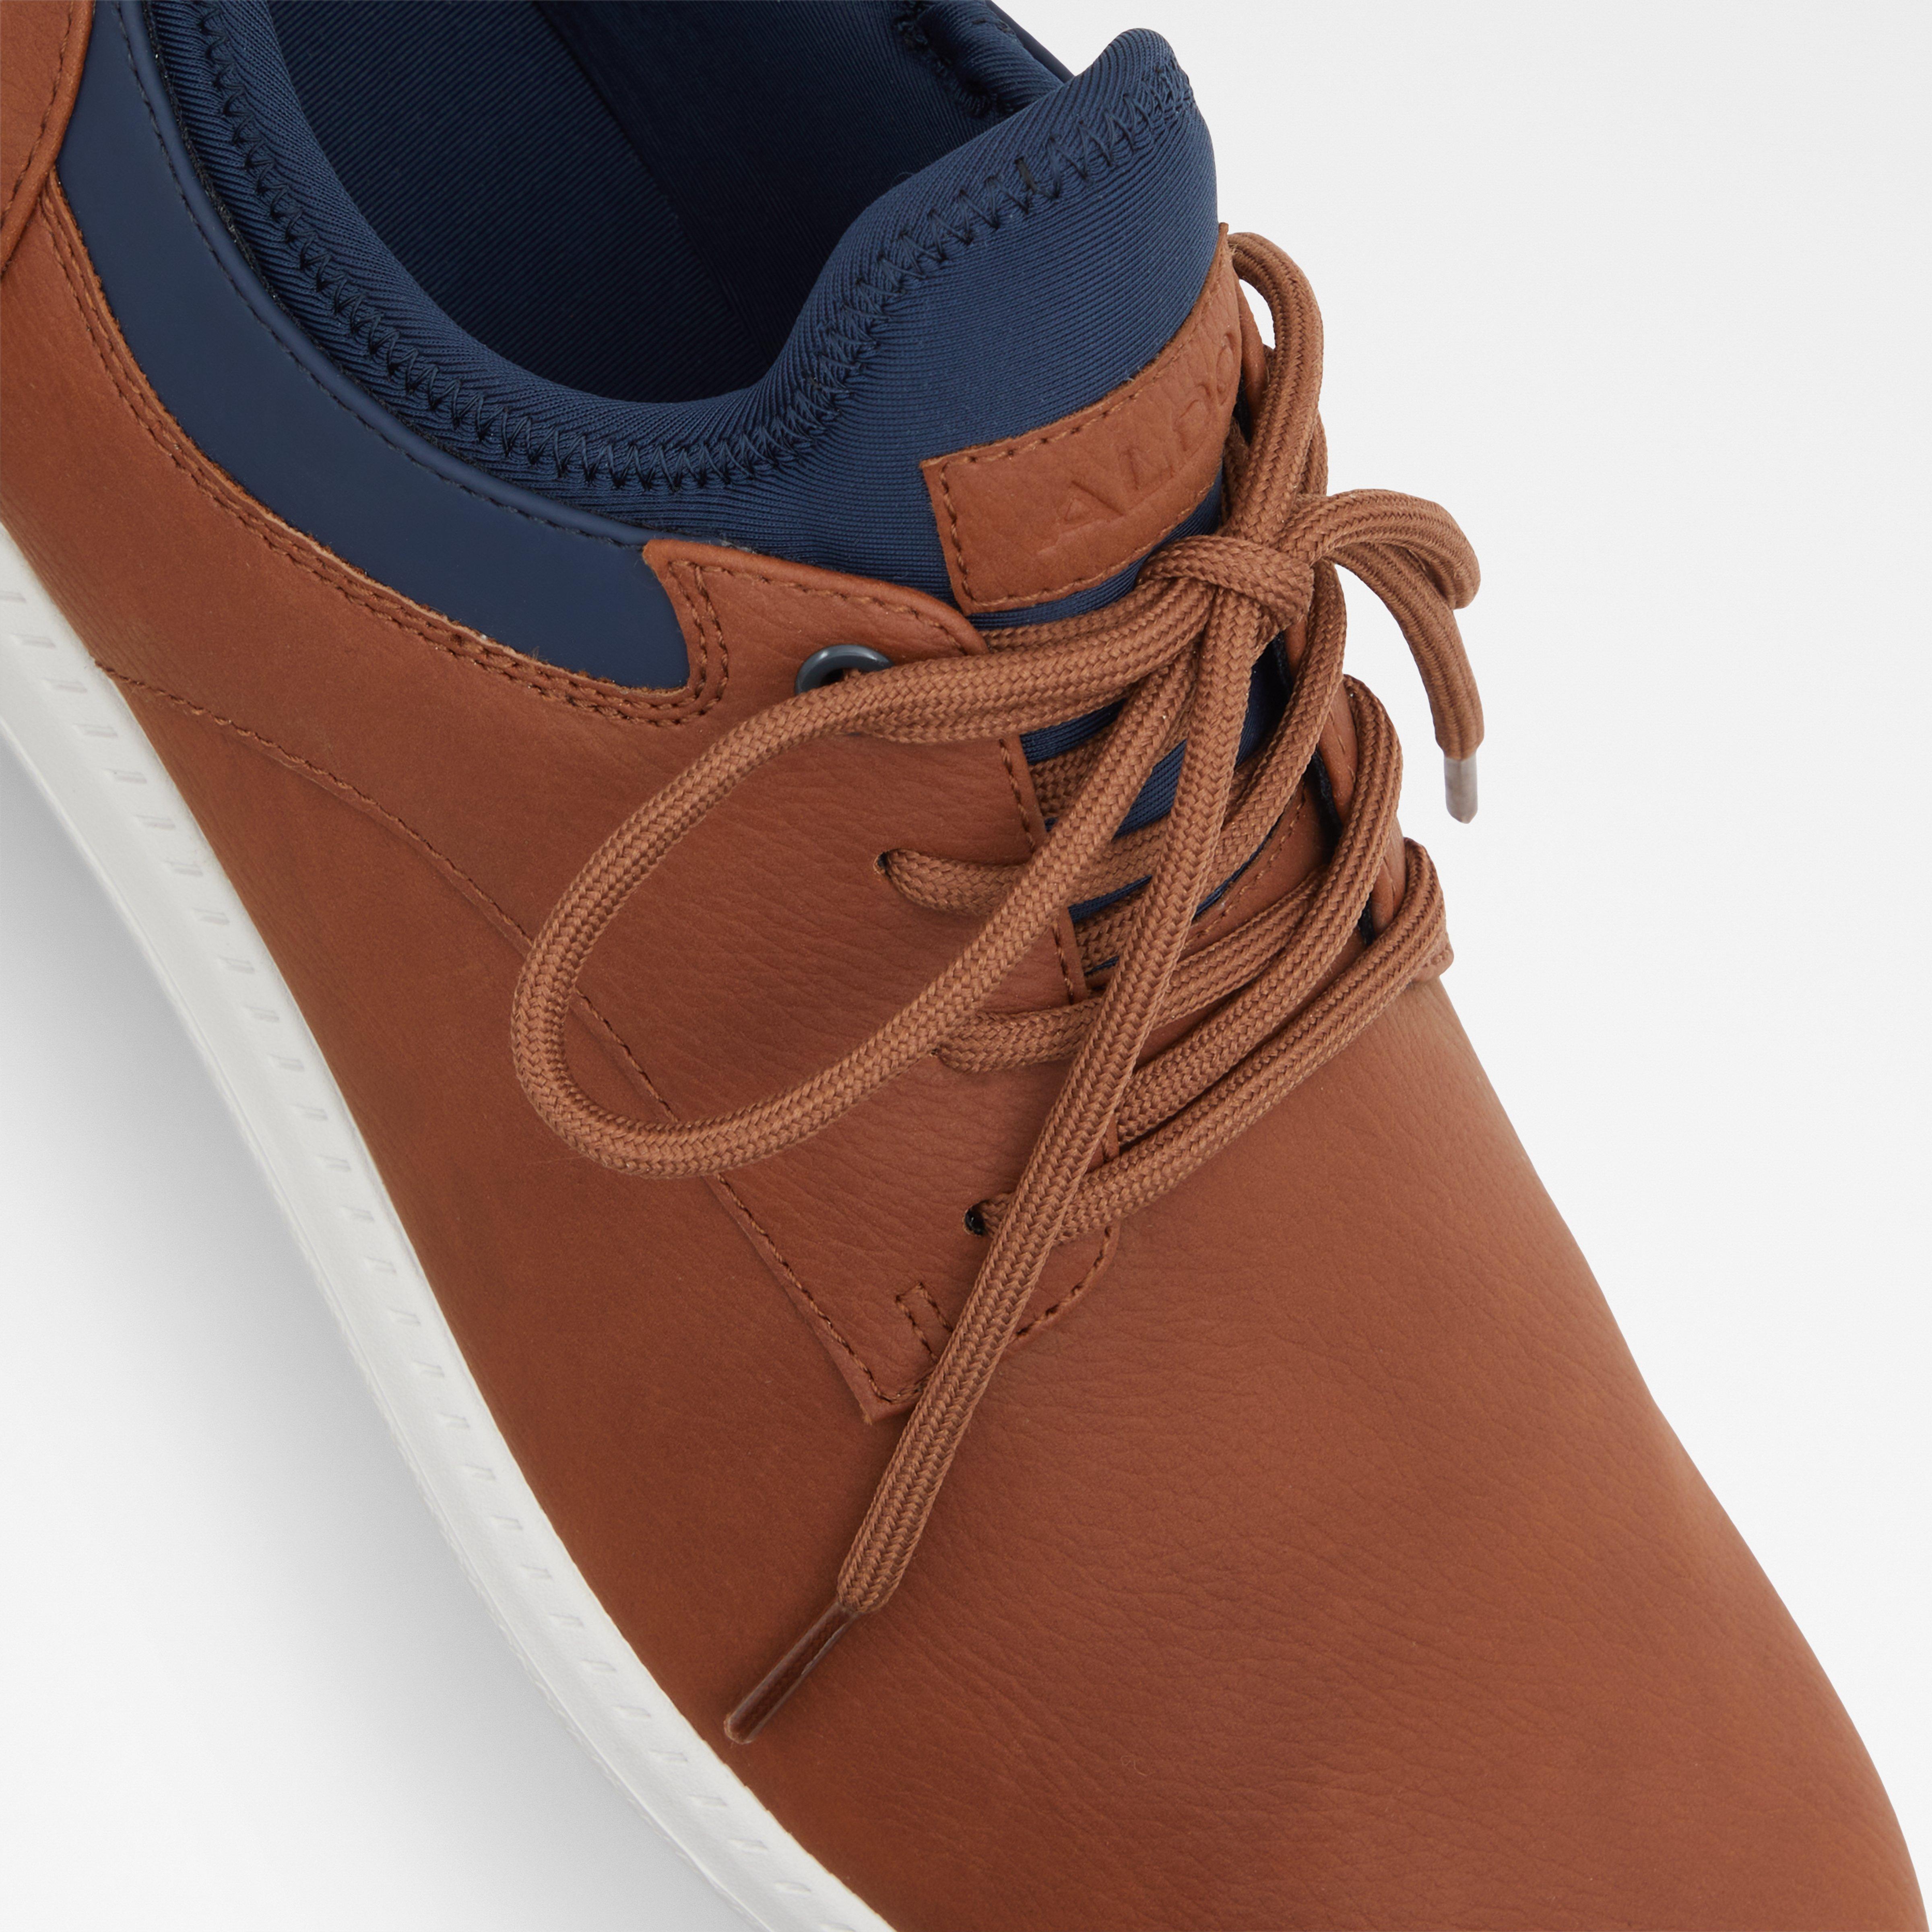 ALDO Low Top Sneakers Light Brown Men's Size 8 EUC | eBay